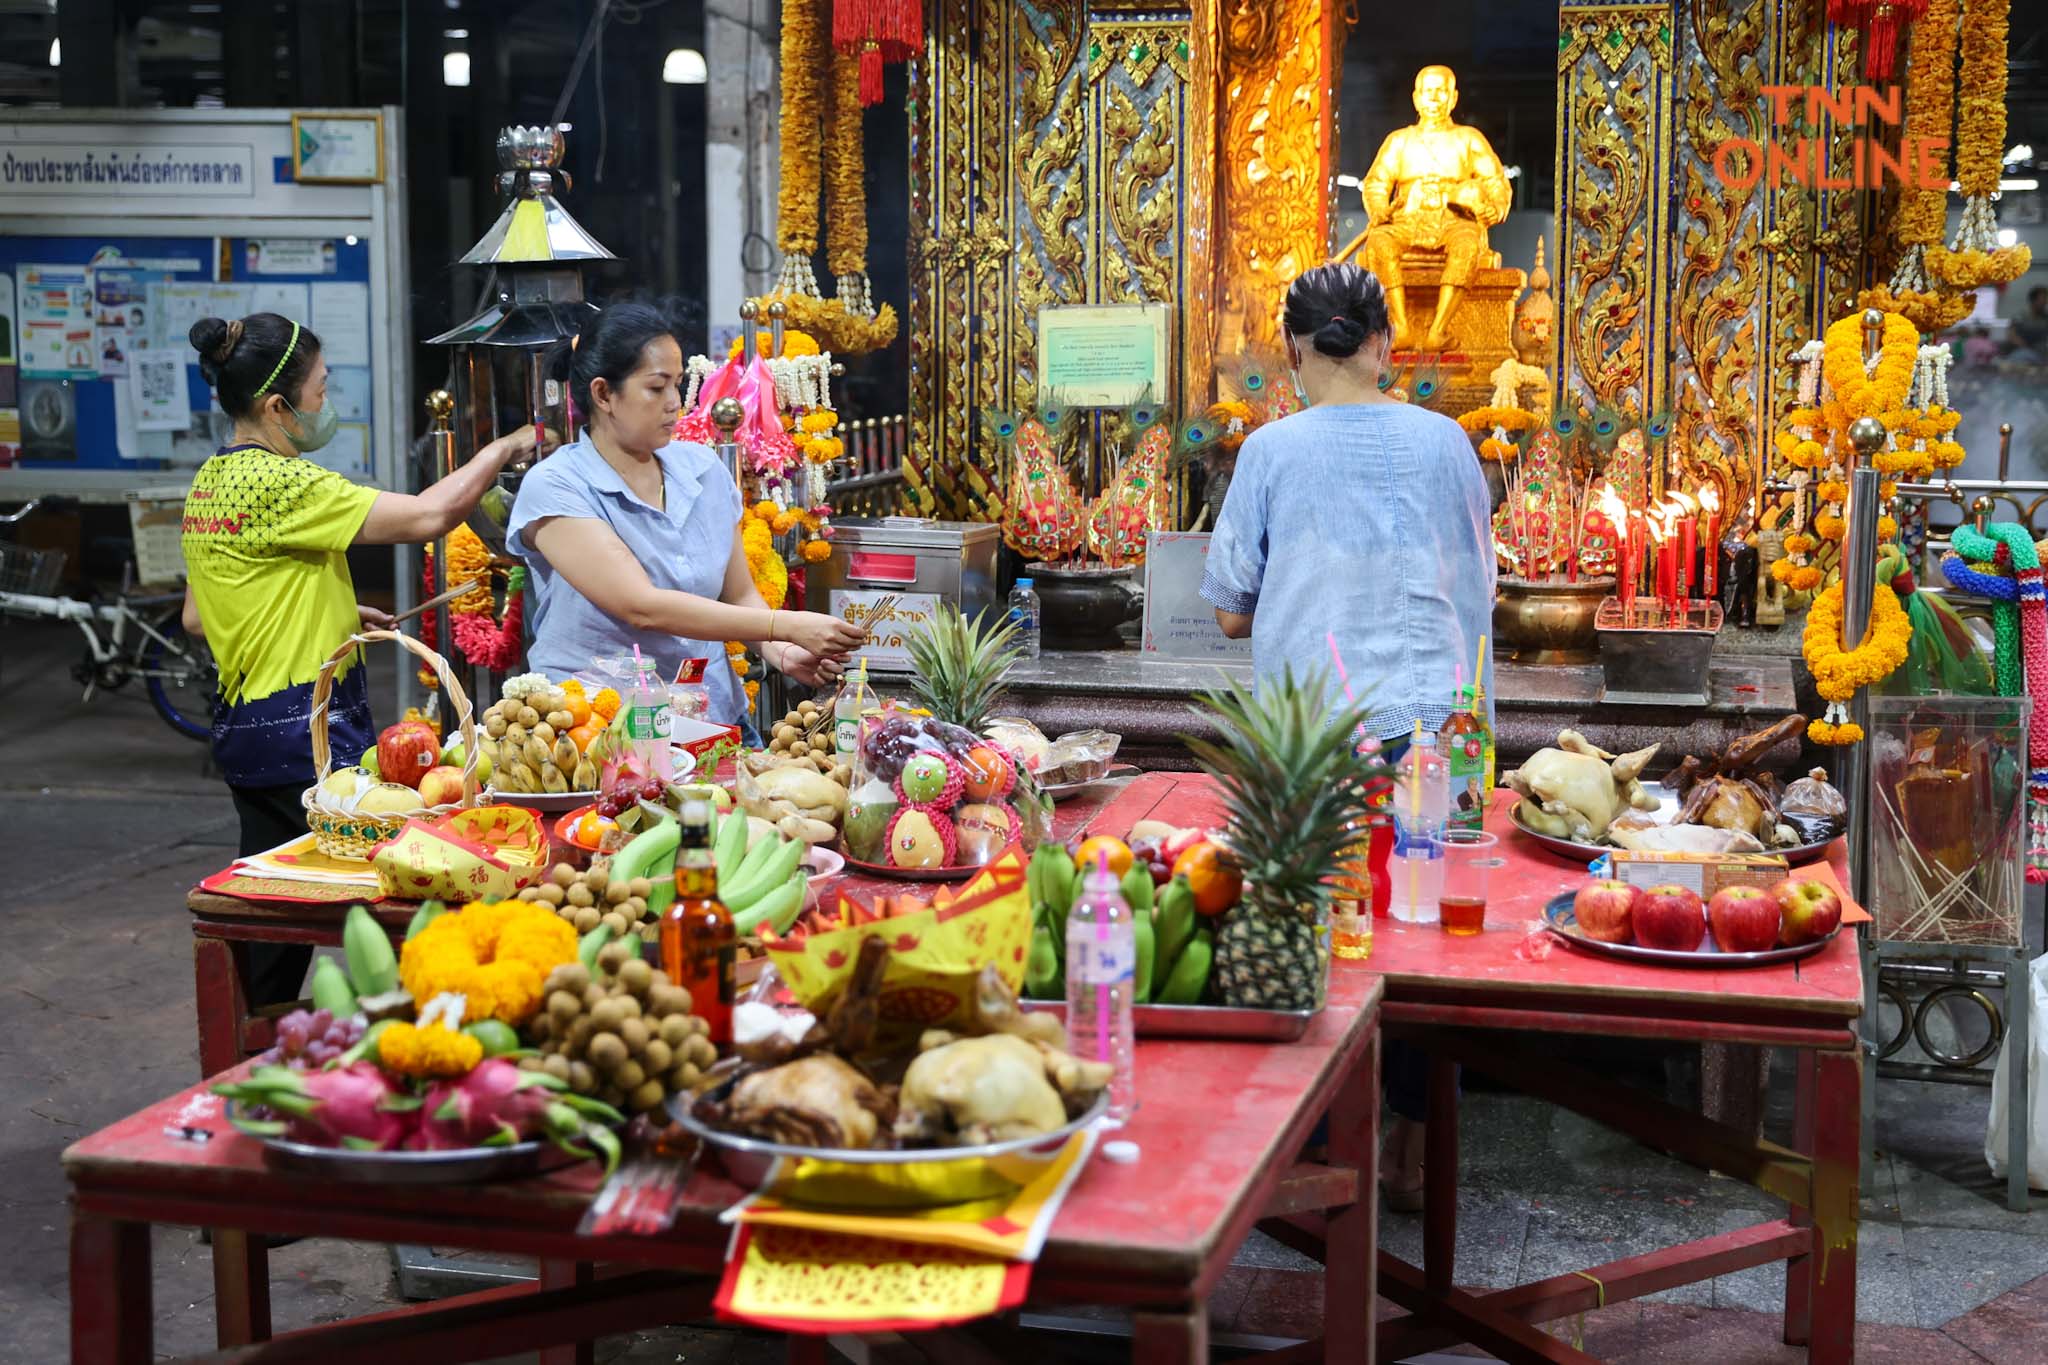 เริ่มไหว้แต่เช้า “วันสารทจีน” ชาวไทยเชื้อสายจีนไหว้สิ่งศักดิ์สิทธิ์ประจำตลาด